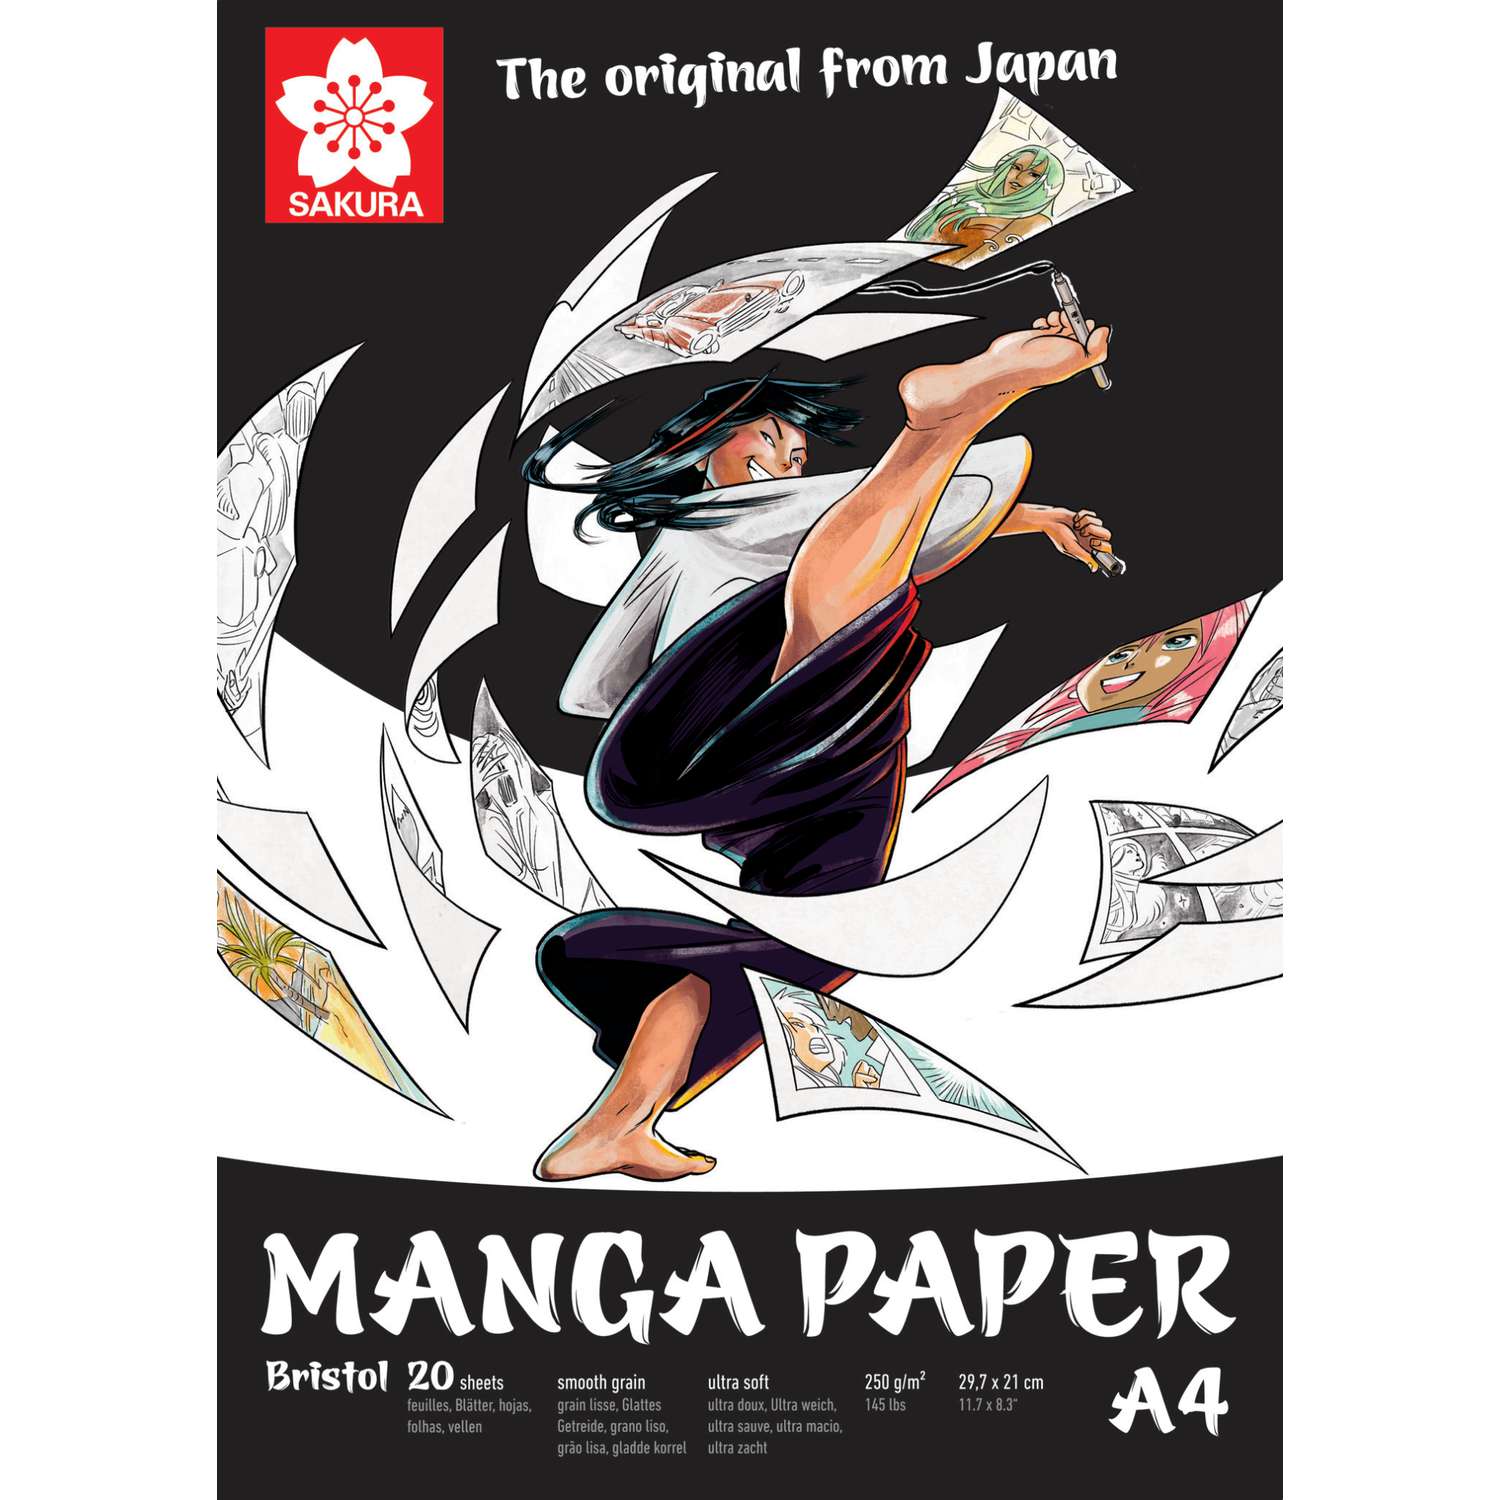 Bloc pour dessiner des mangas A4 papier imprimé